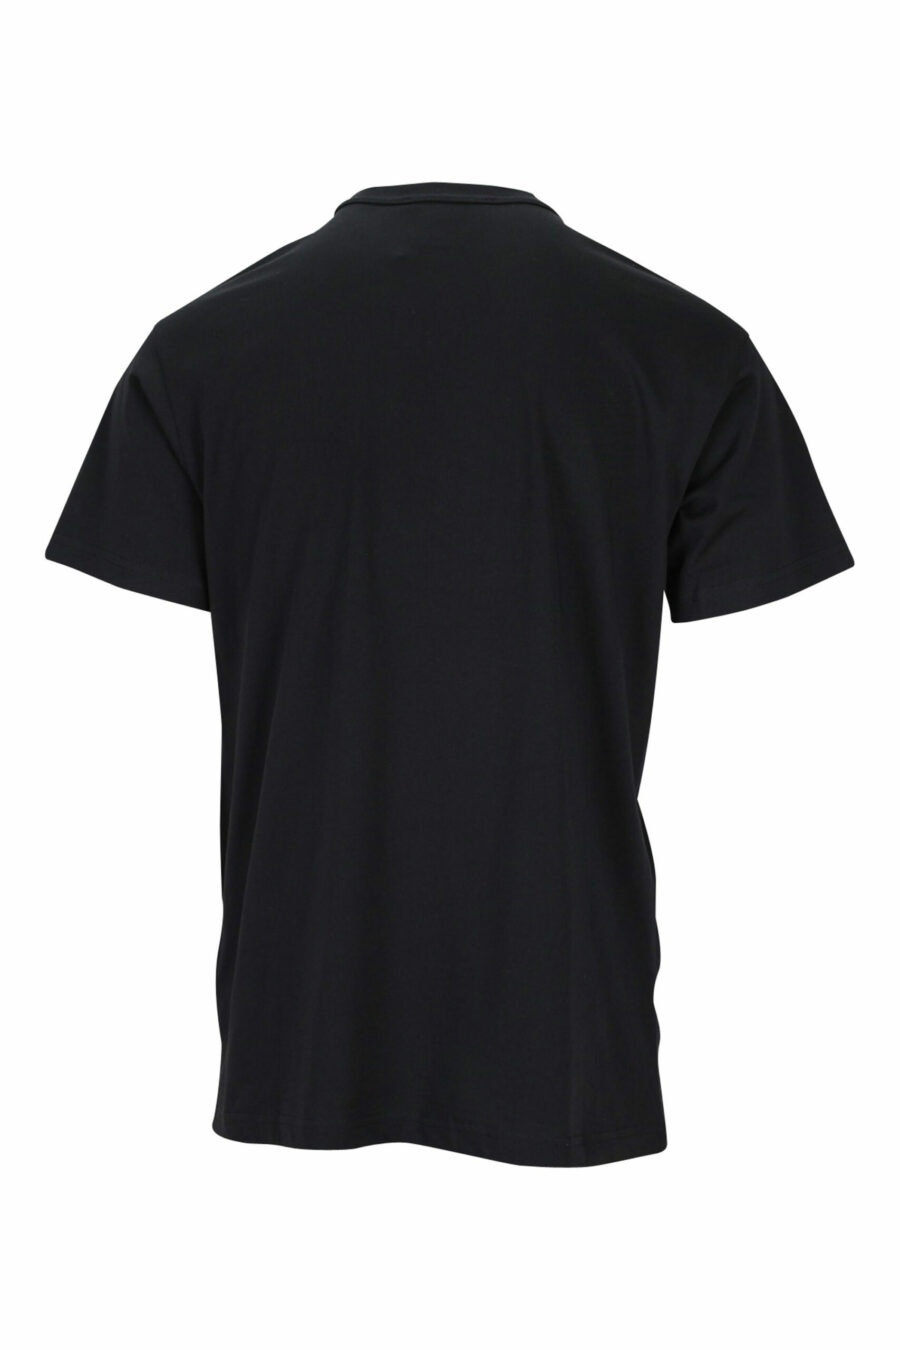 T-shirt noir avec maxilogue classique contrasté - 8052019457698 1 scaled